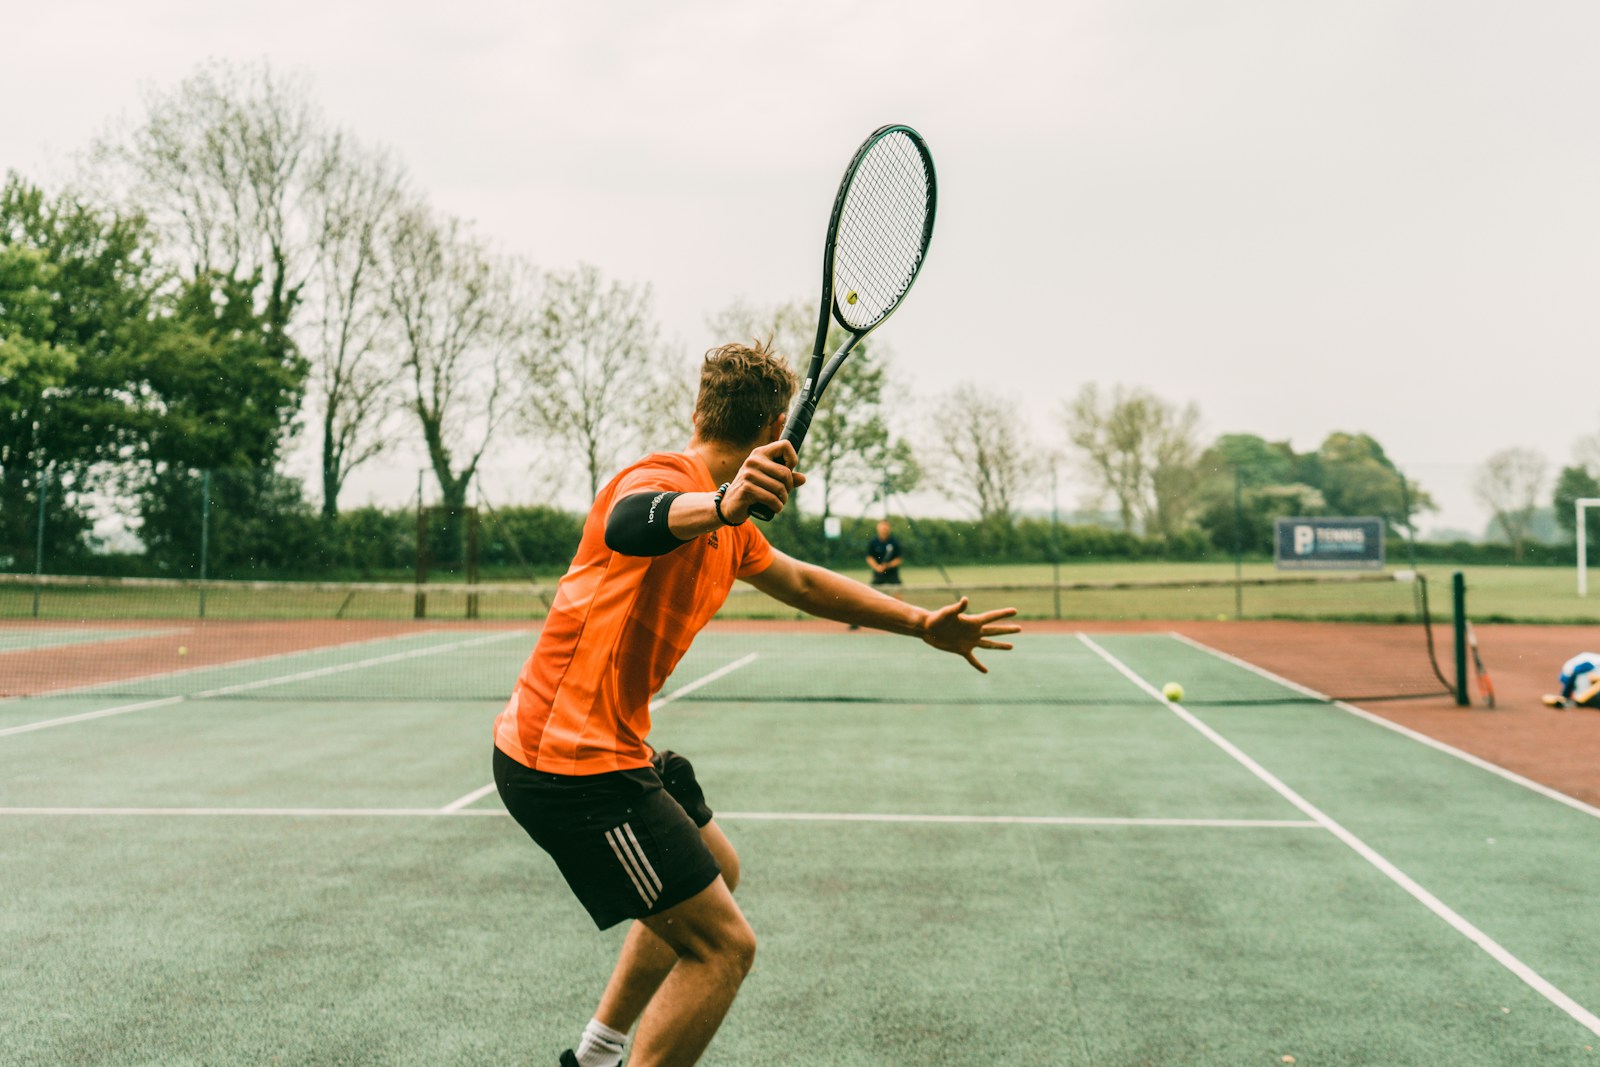 Les erreurs courantes chez les joueurs de tennis intermédiaires : corrections et conseils